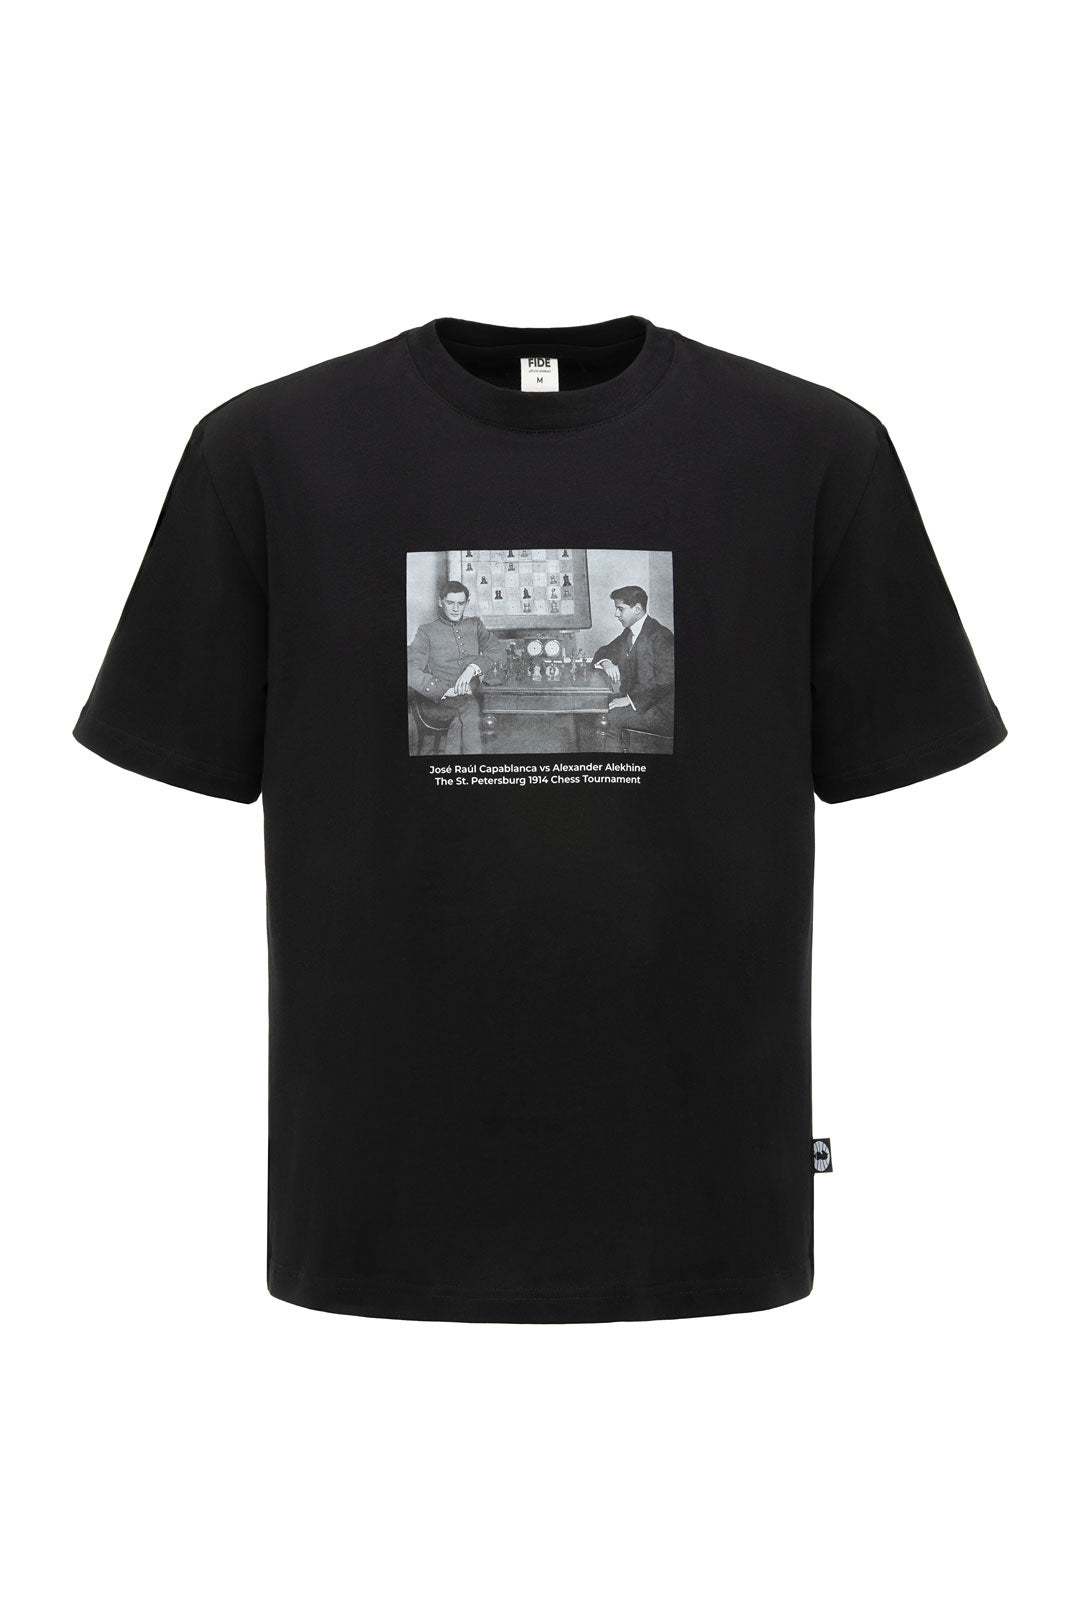 FIDE Originals Unisex “Capablanca-Alekhine” t-shirt